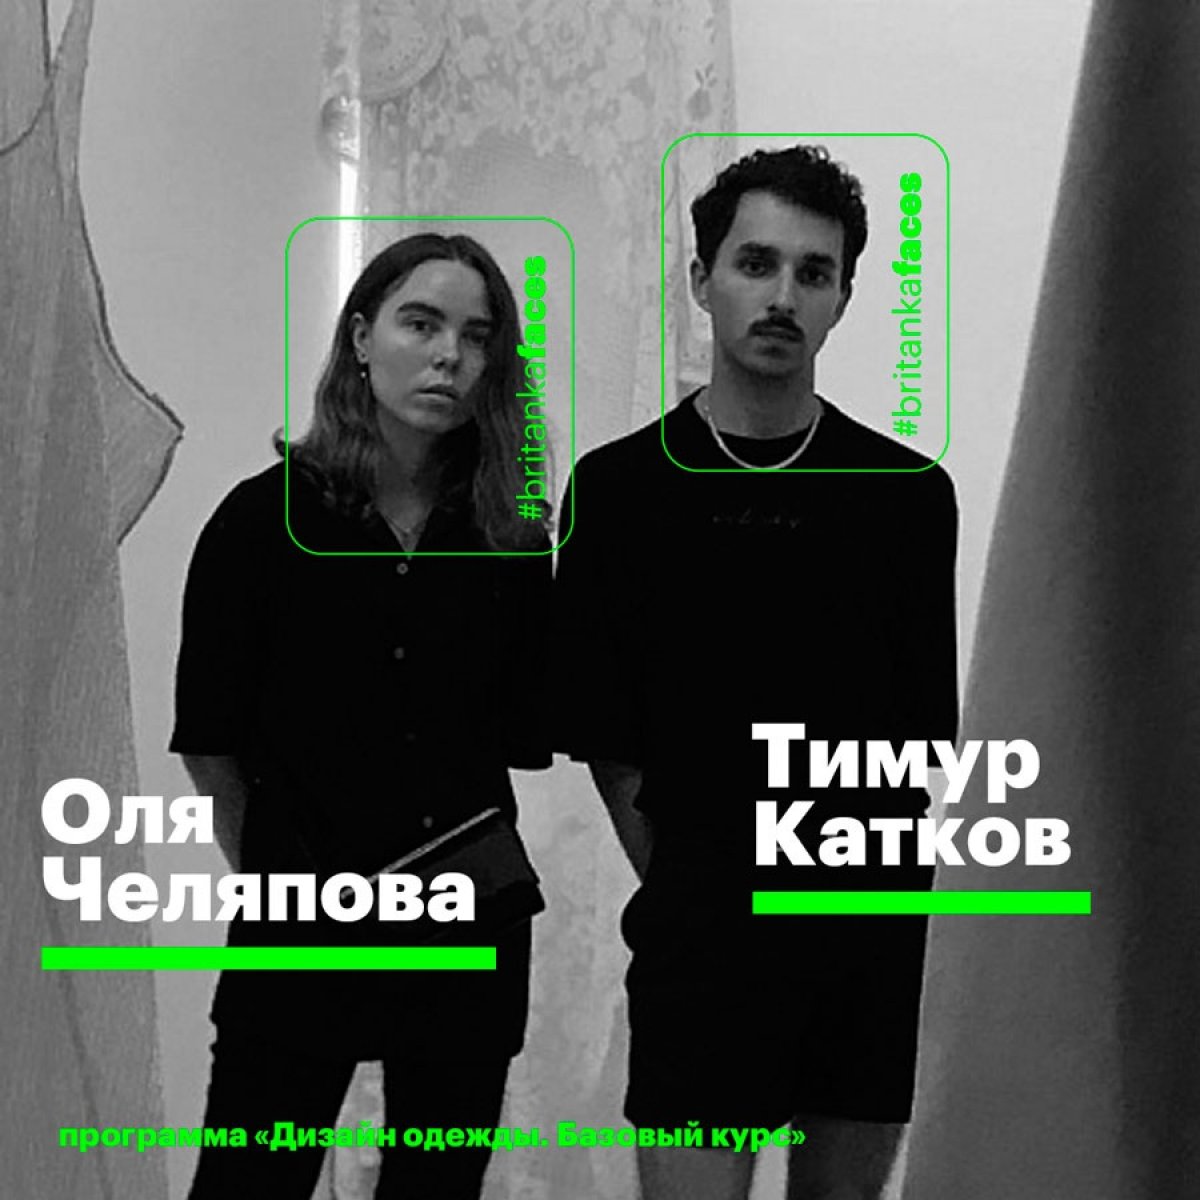 Выпускники программы «Дизайн одежды» Оля Челяпова и Тимур Катков рассказывают об истории своего бренда nashe: от учебных проектов до международного бренда.